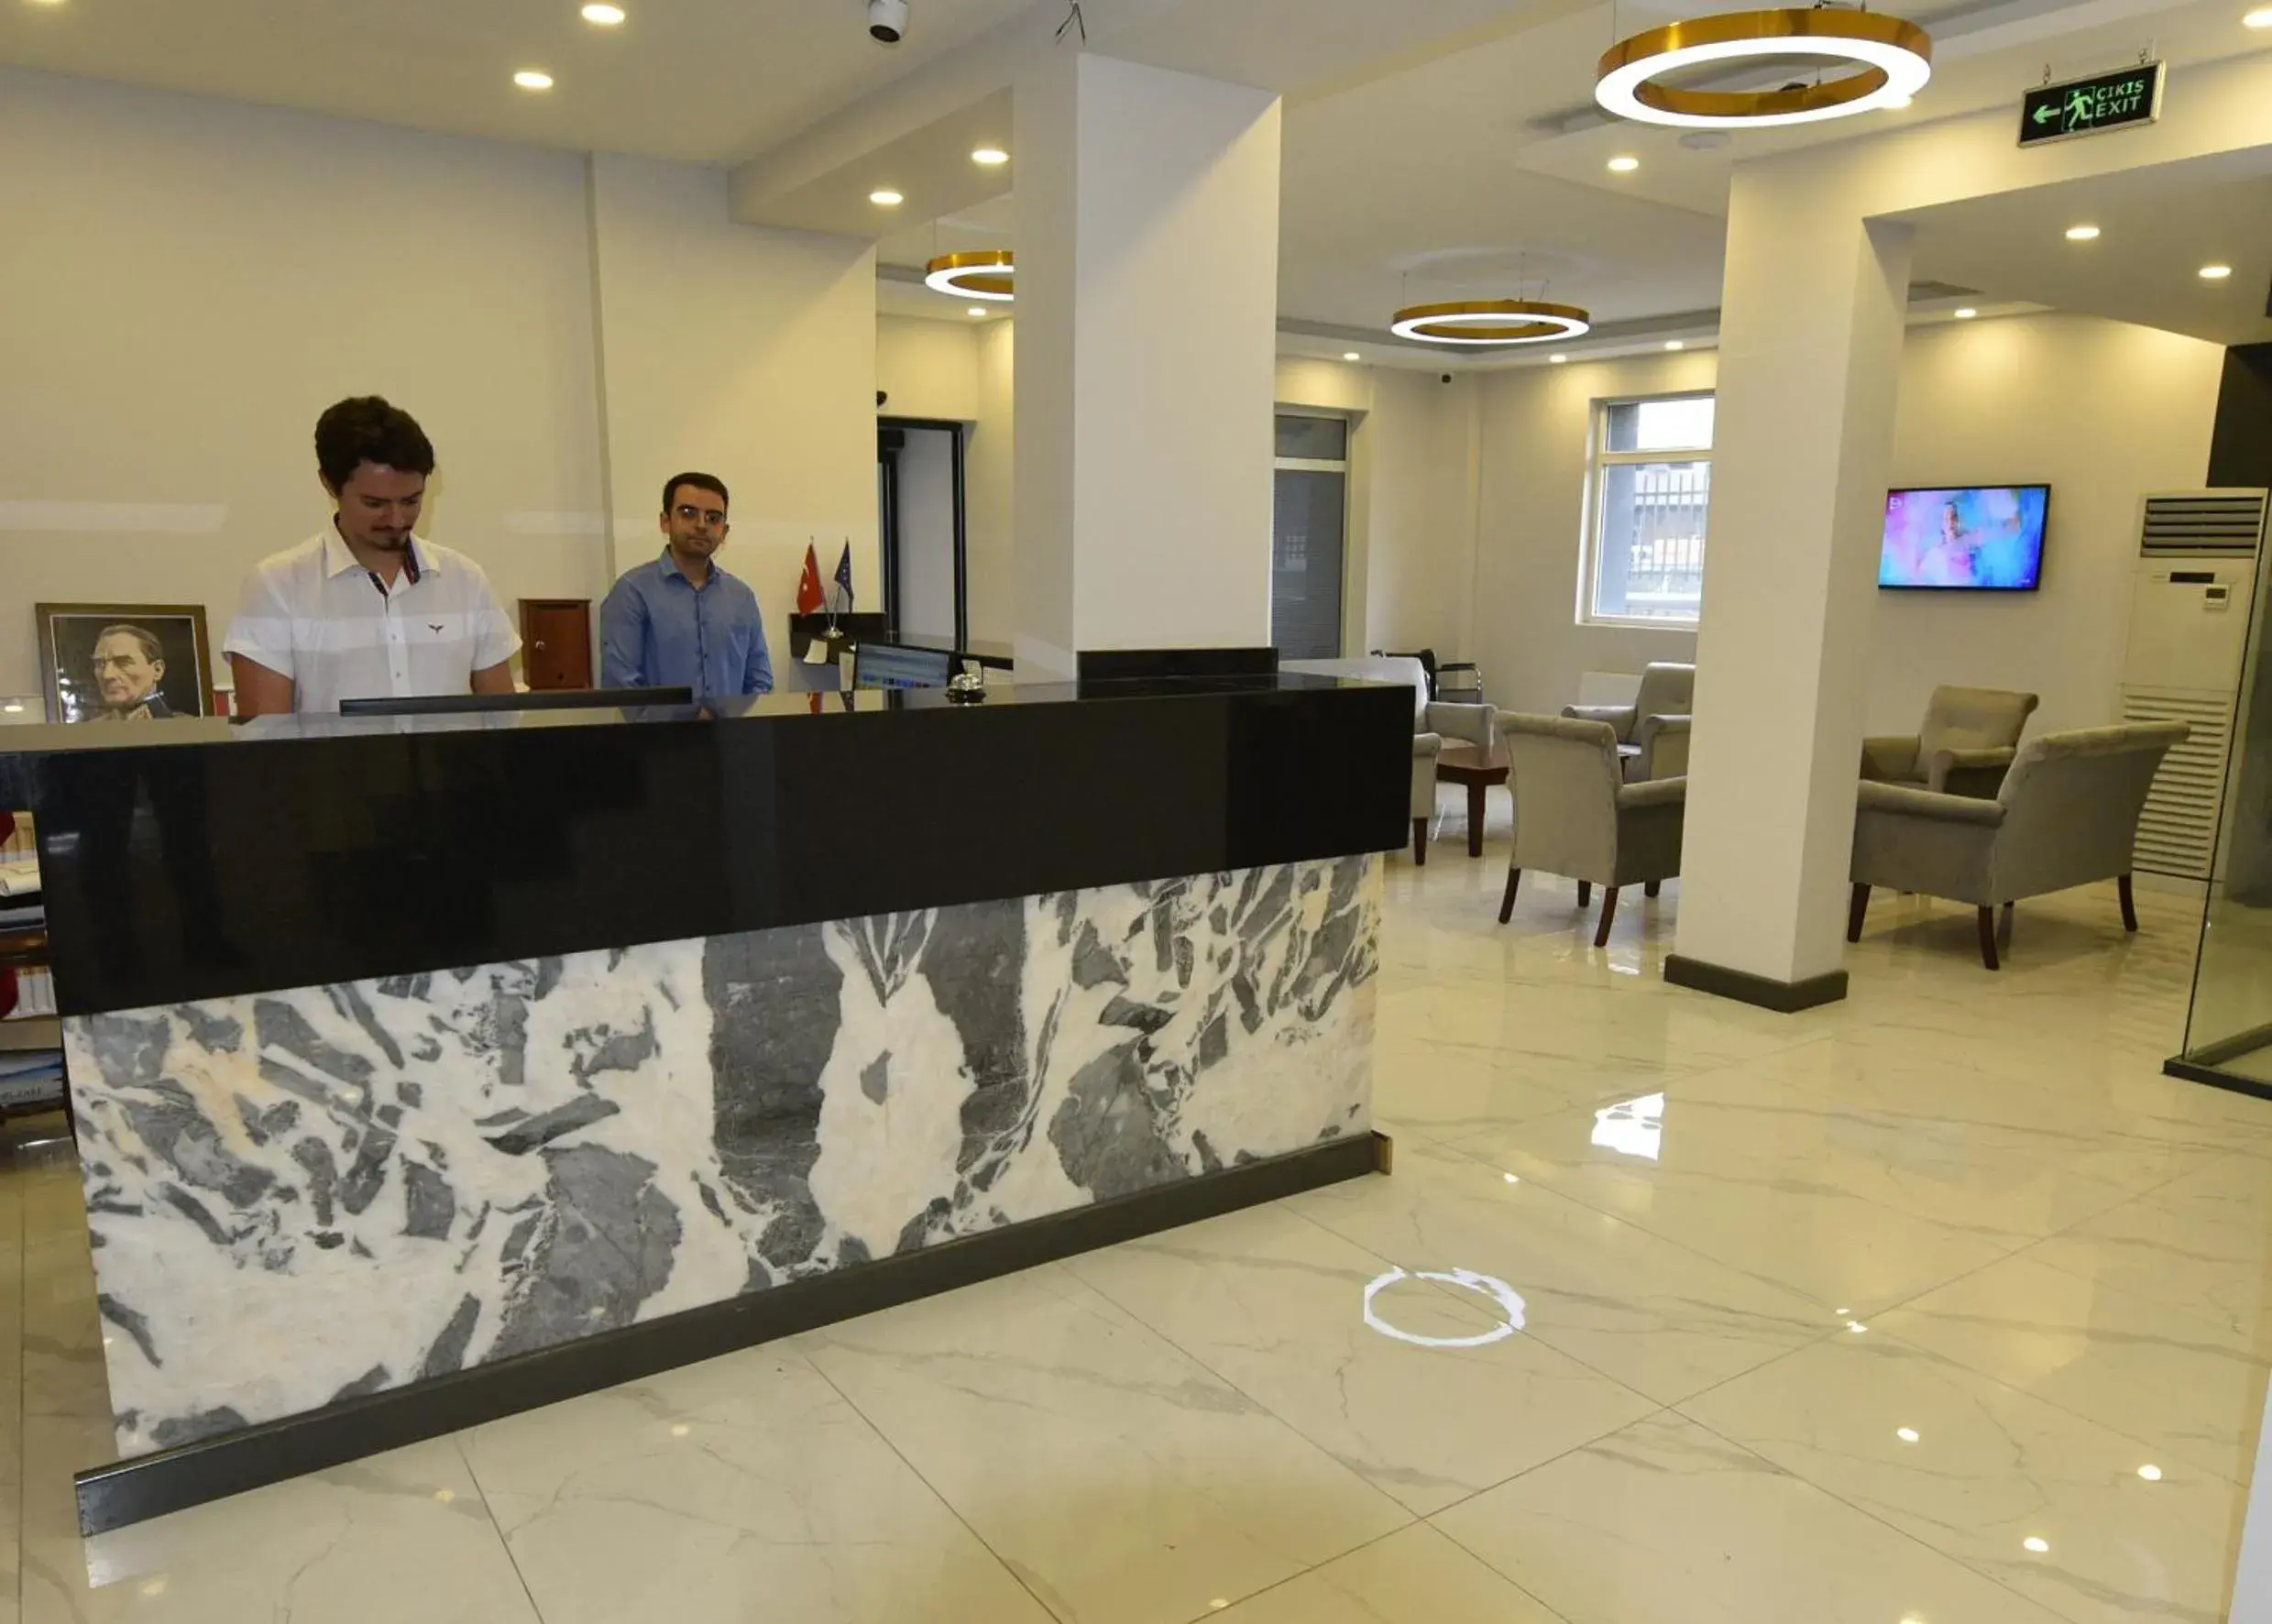 Lobby or reception in Sahil Hotel Pendik